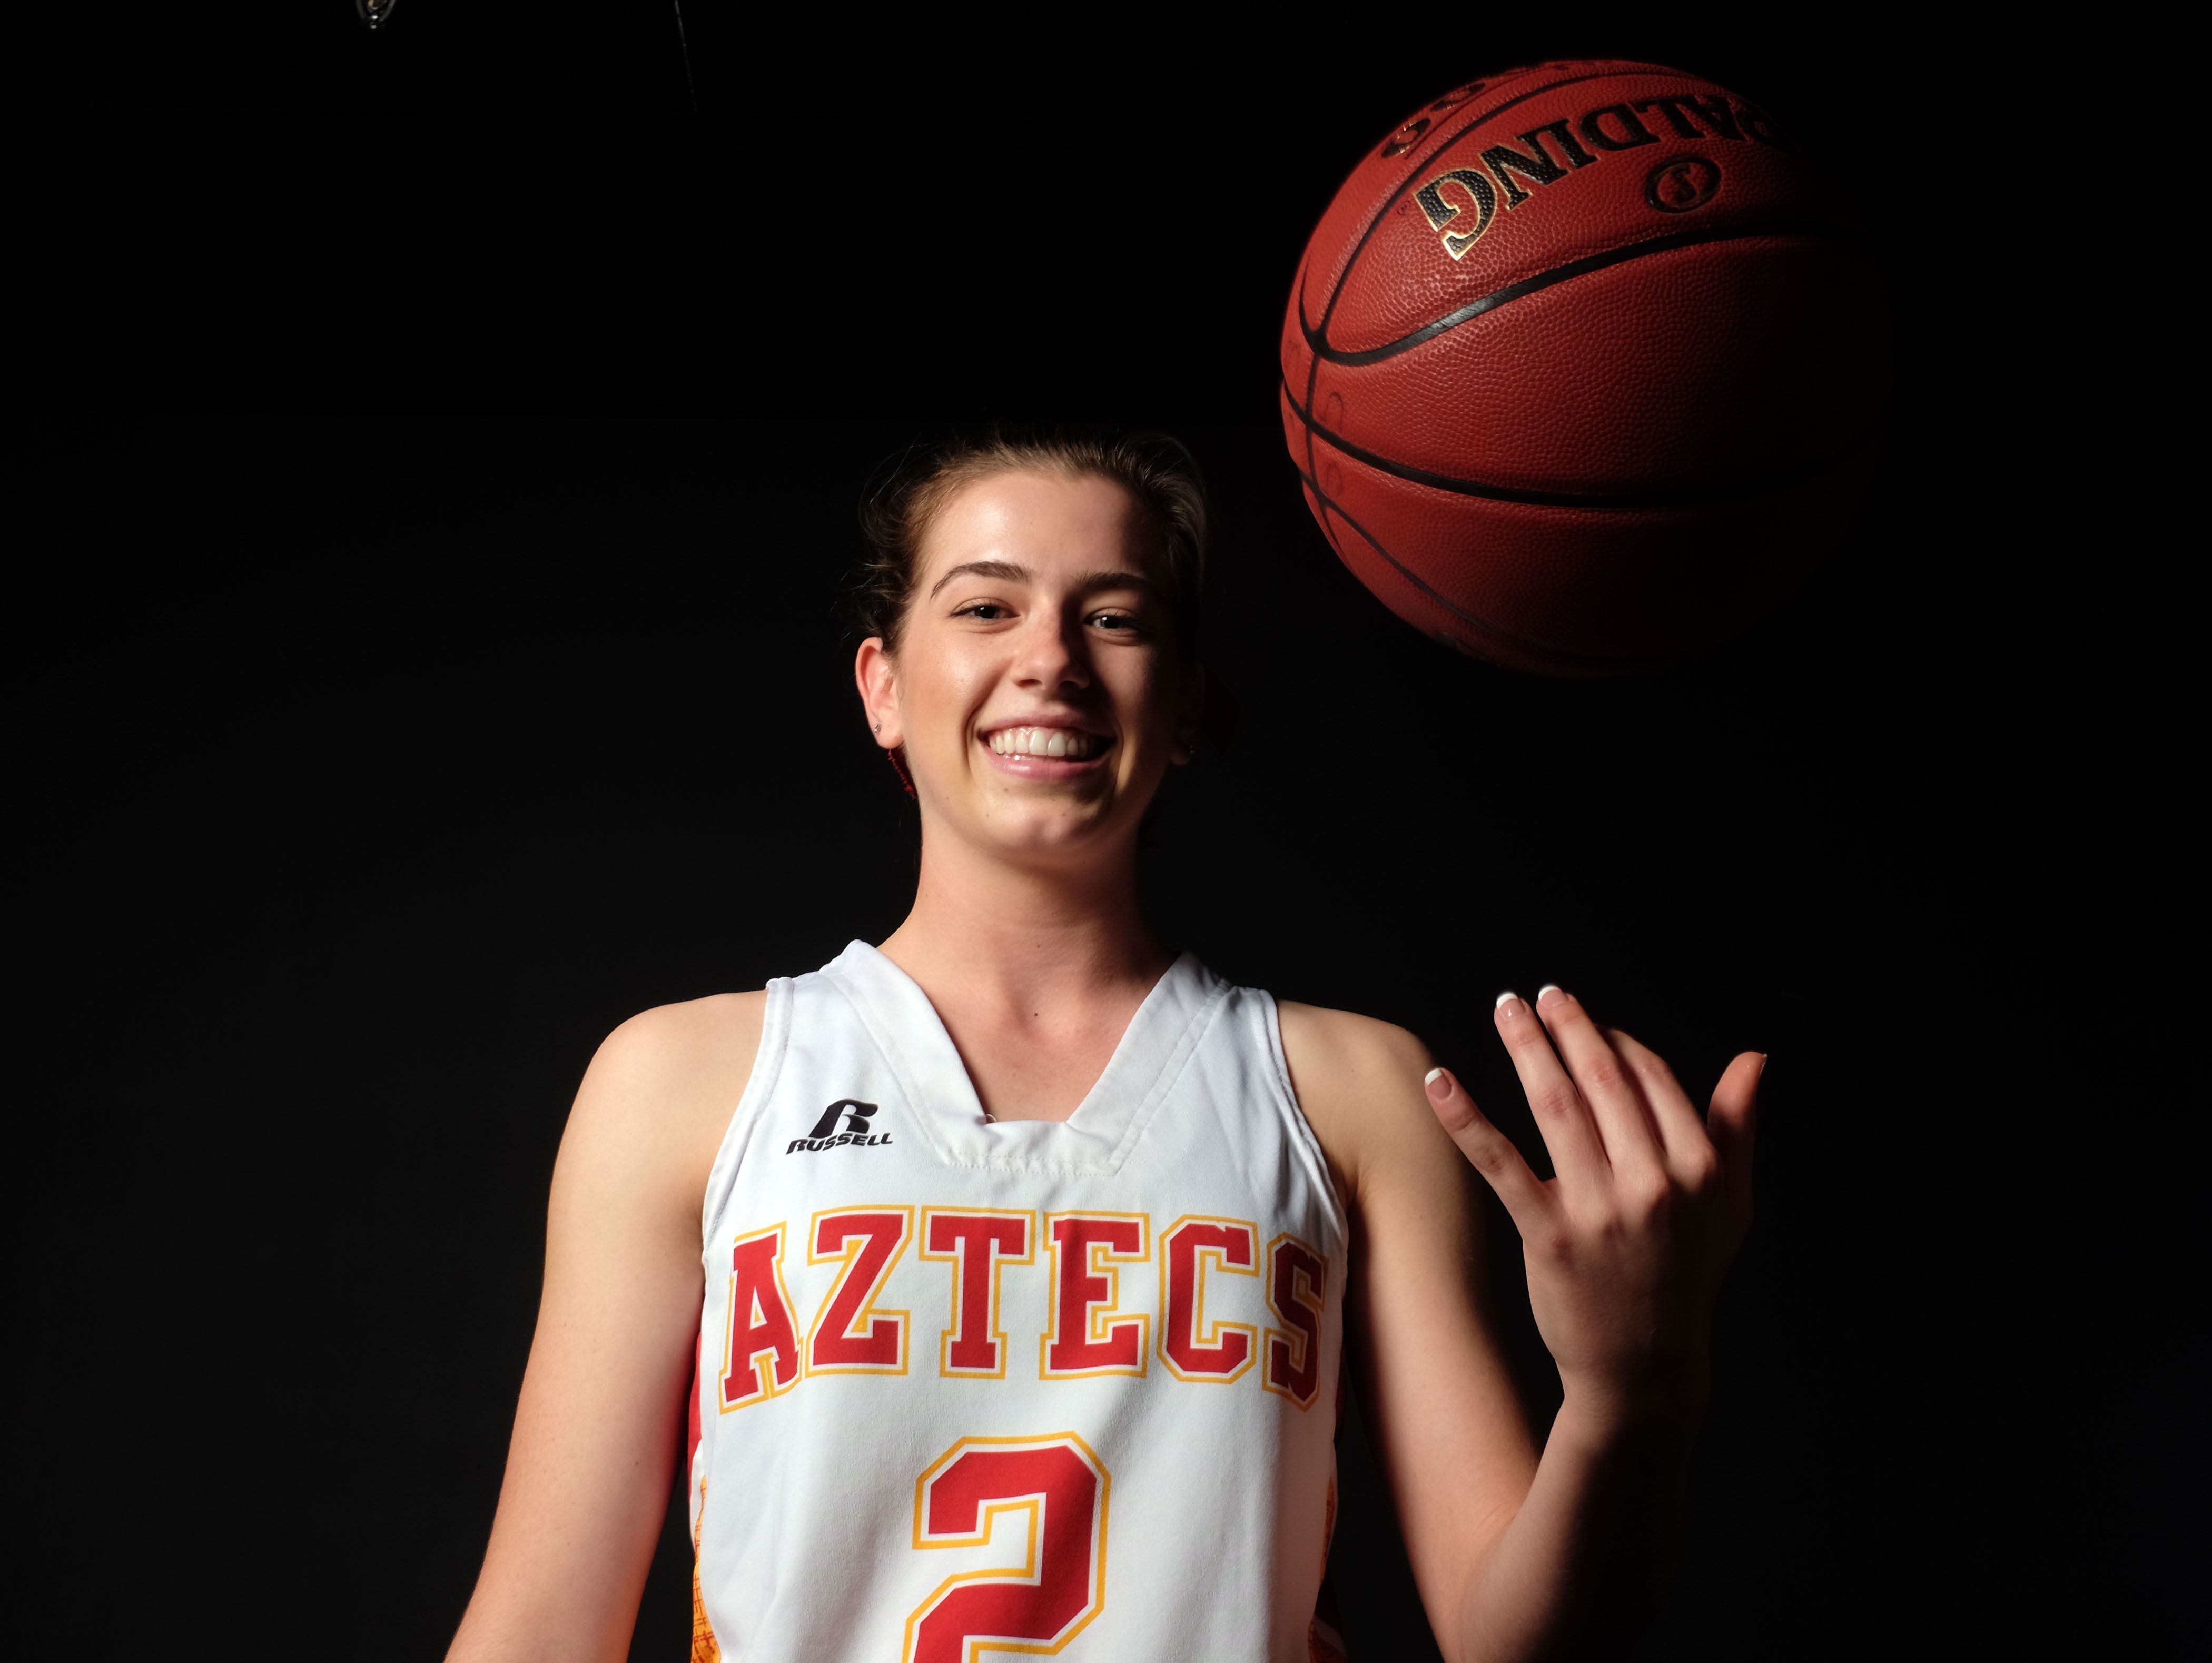 Palm Desert Basketball player Seline Schinke at Desert Sun March 10, 2017 in Palm Springs.